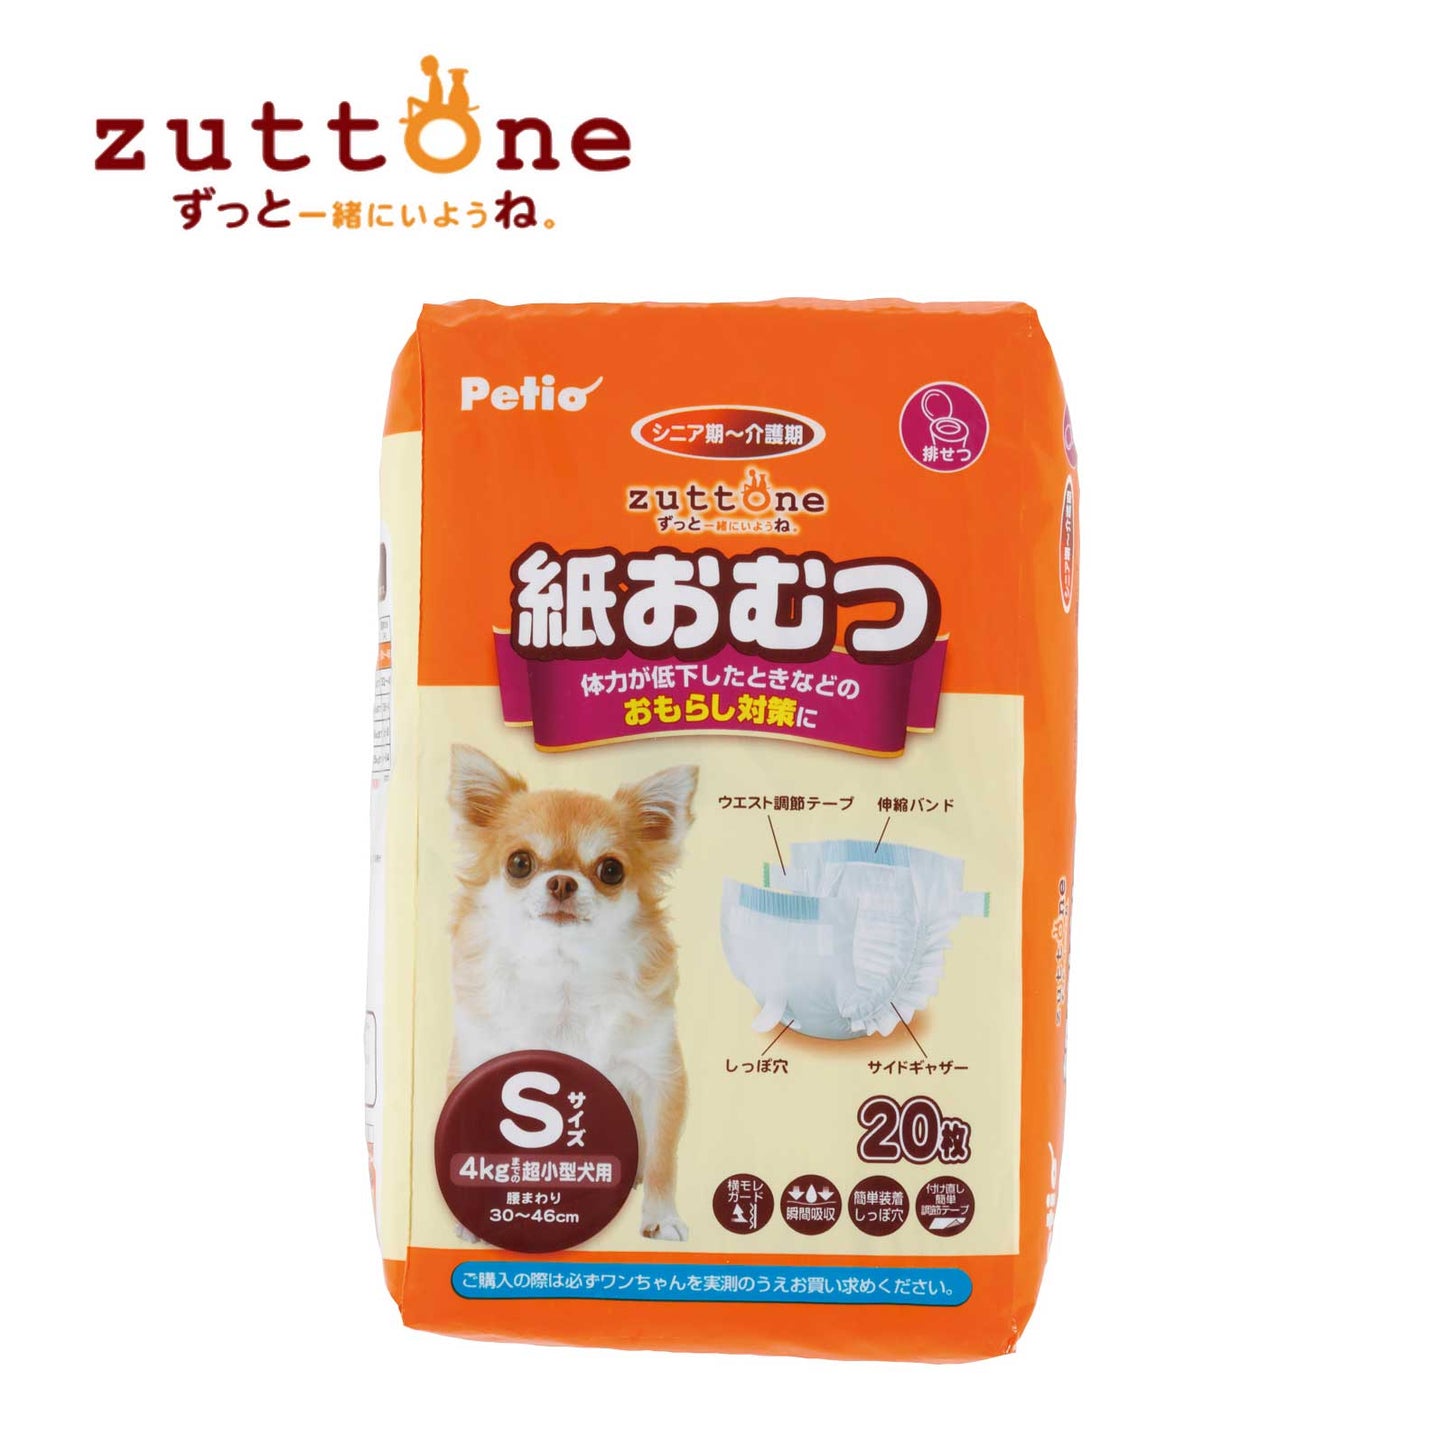 Petio Zuttone Disposable Paper Diaper Nappy